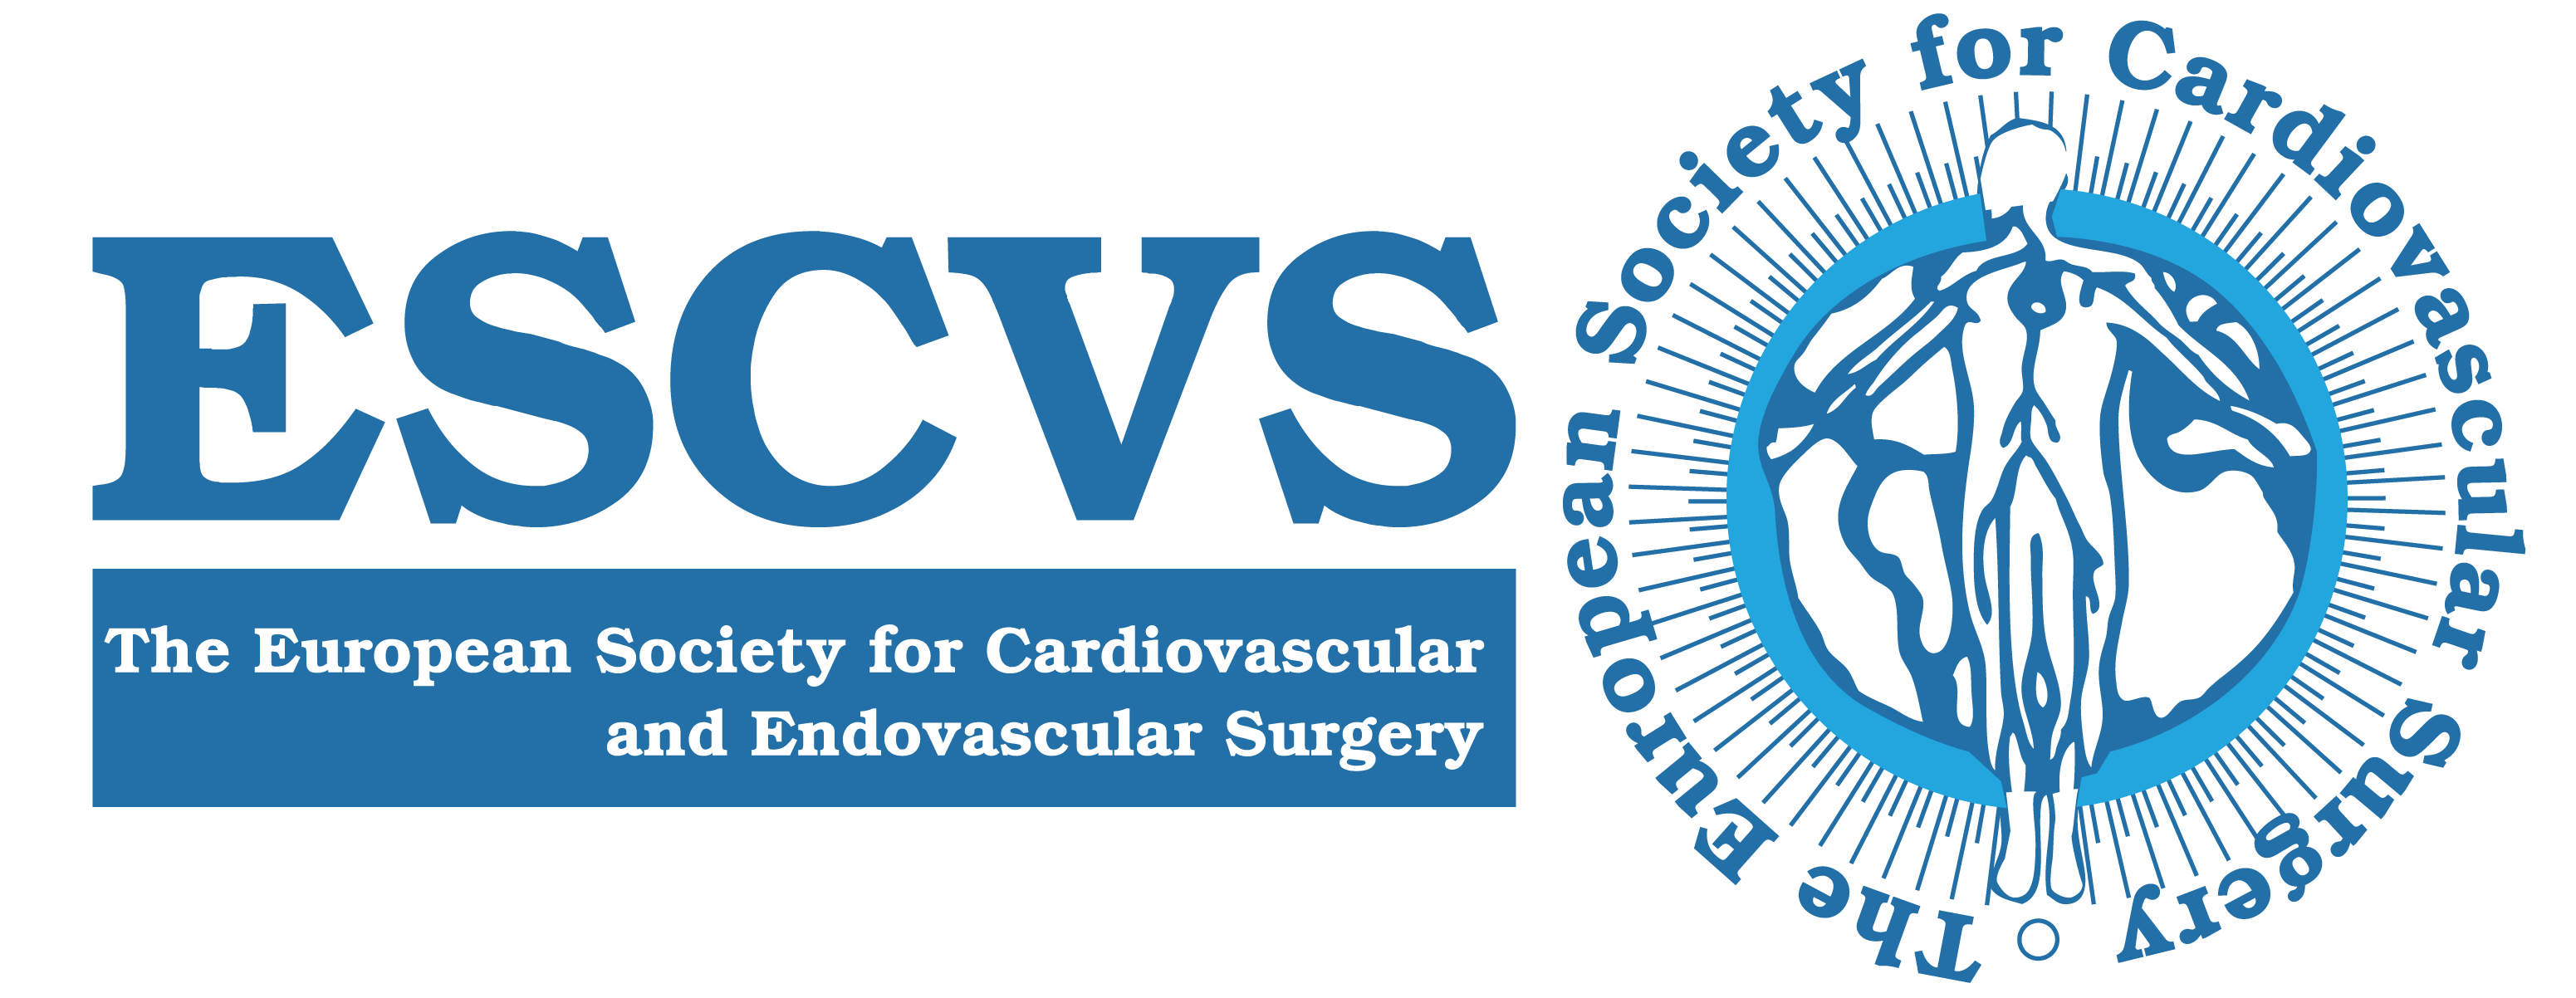 The European Society for CardioVascular Surgery - ESCVS